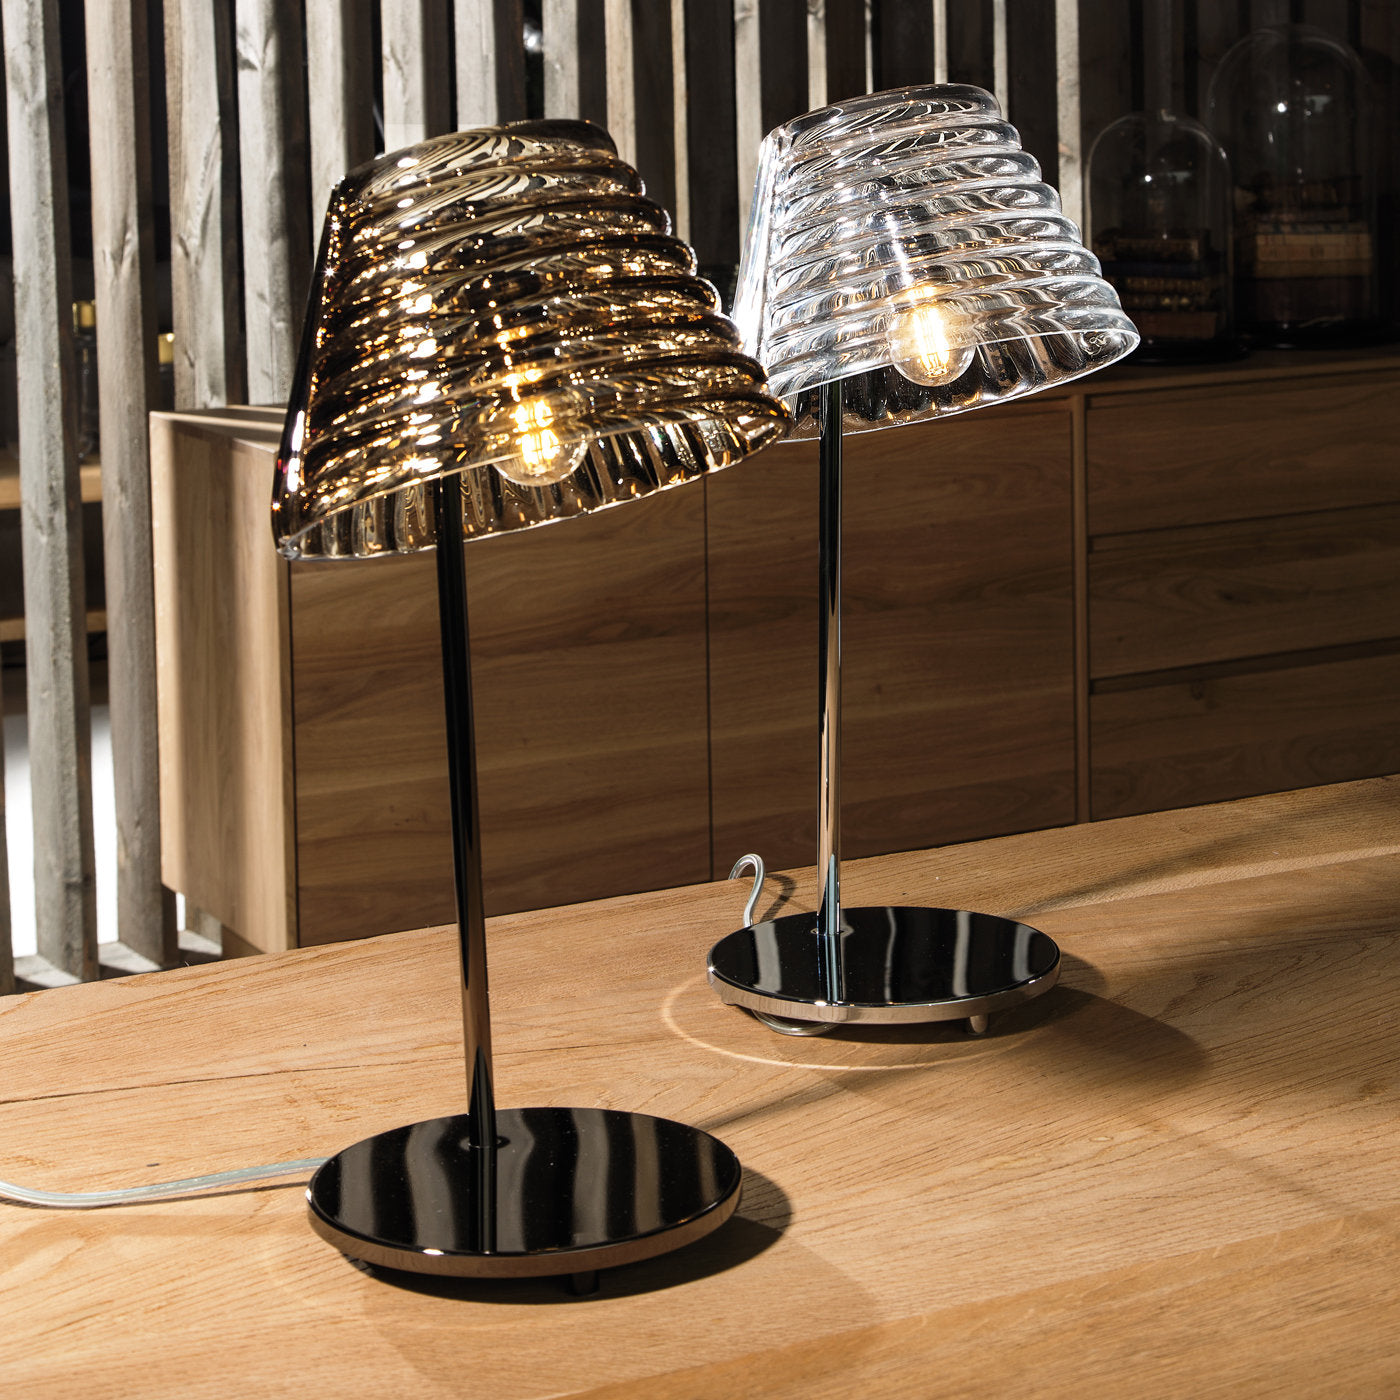 Profili Table Lamp by Giovanni Barbato - Alternative view 1